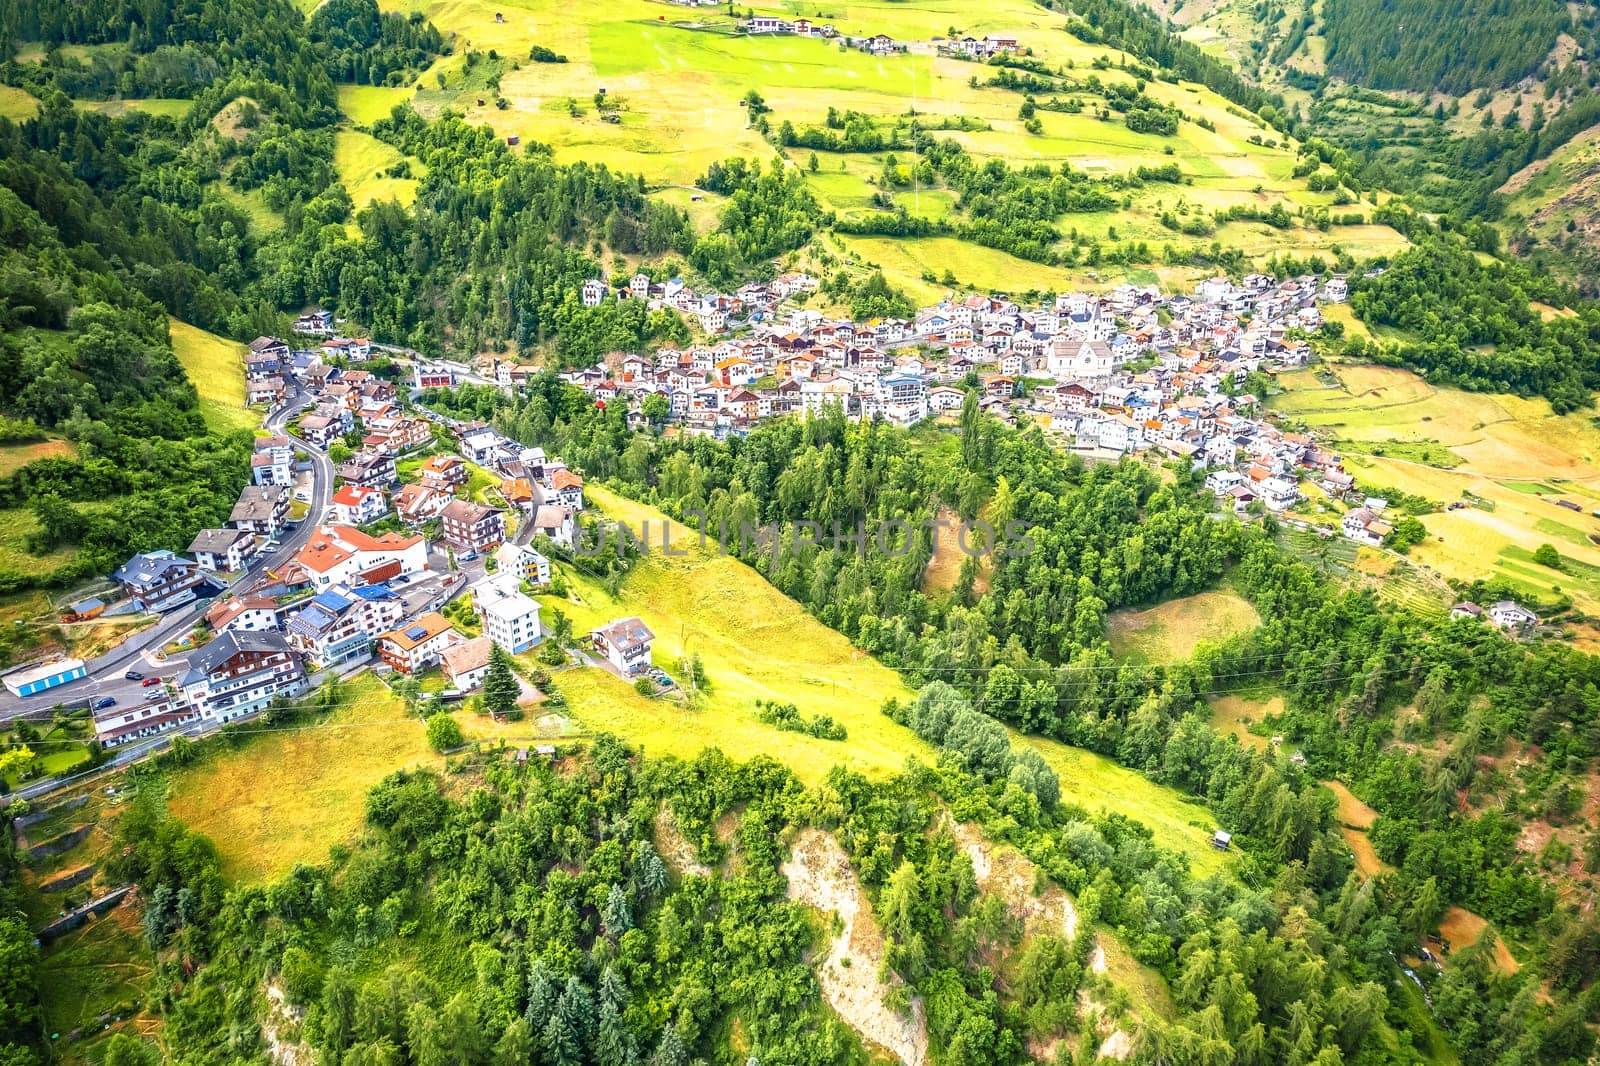 Stelvio village or Stilfs in Dolomites Alps landscape aerial view by xbrchx